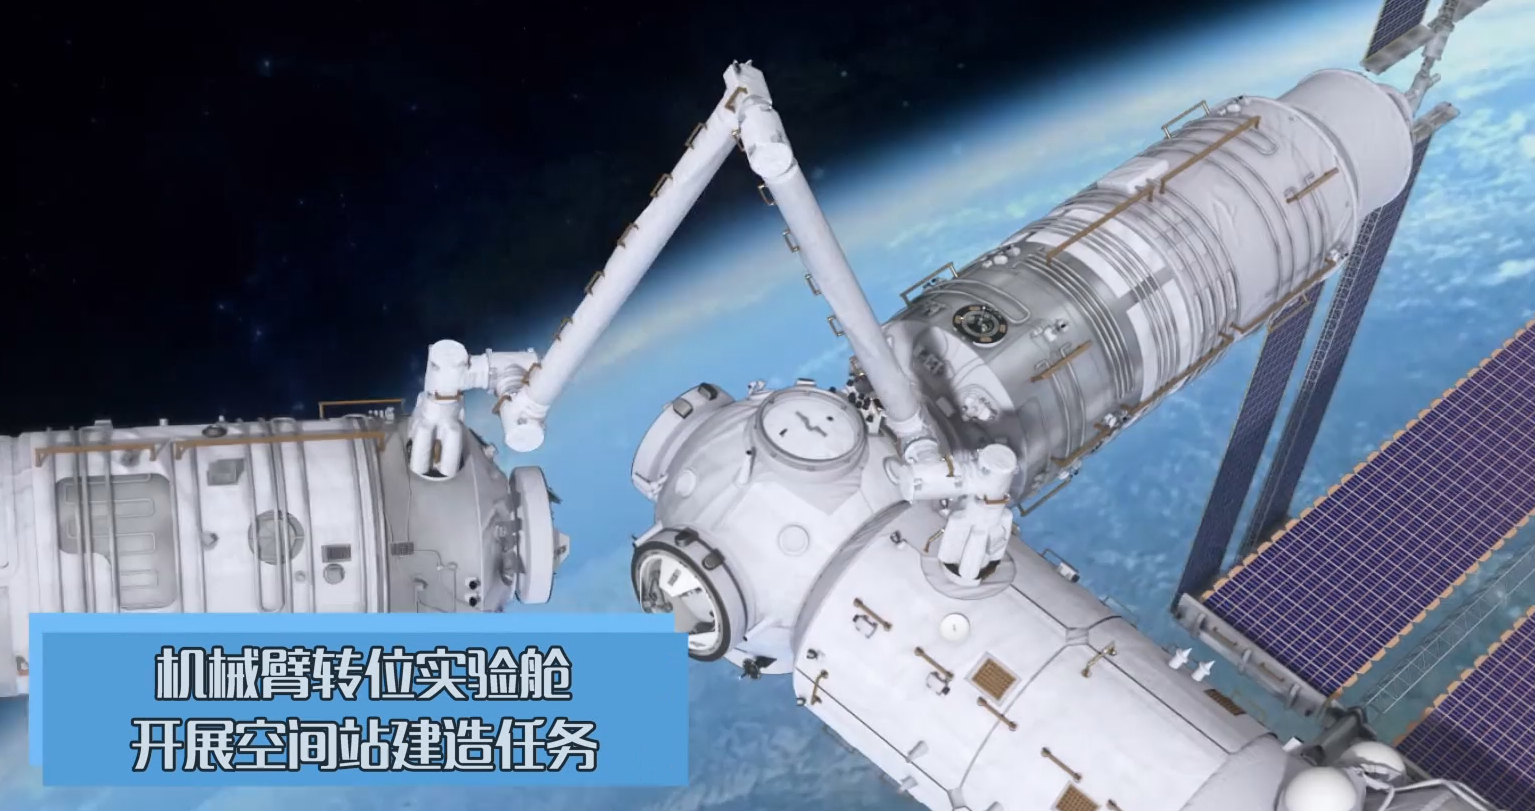 "天宫神臂"的重要意义天宫空间站上的这些机械臂,除了我们前面提到的